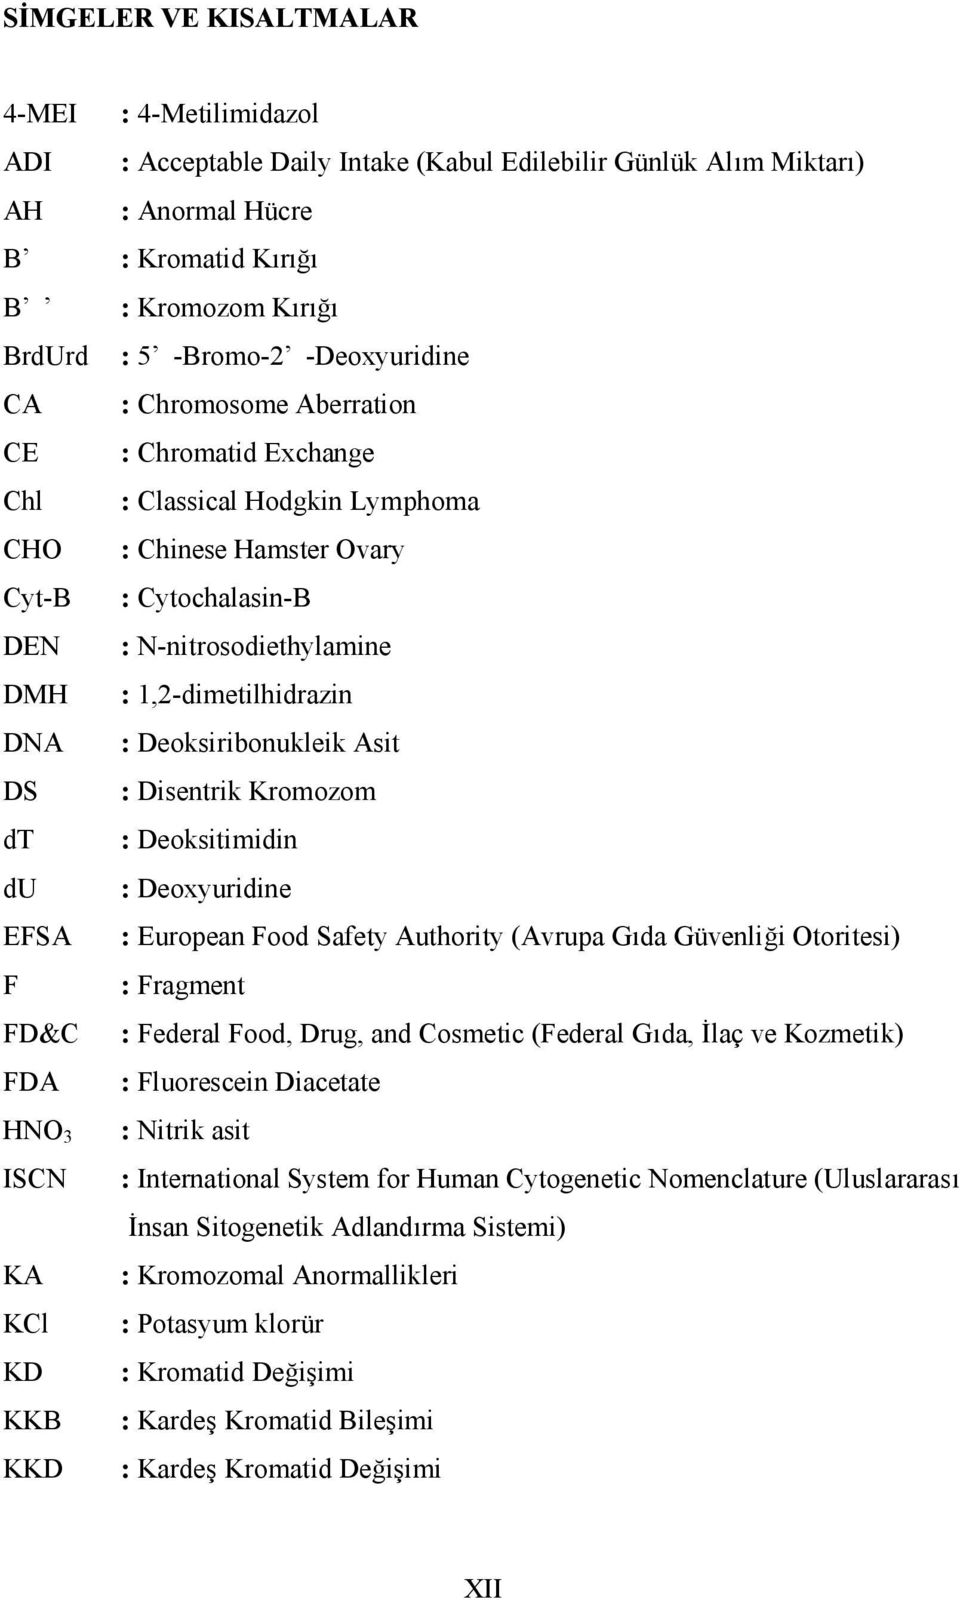 1,2-dimetilhidrazin DNA : Deoksiribonukleik Asit DS : Disentrik Kromozom dt : Deoksitimidin du : Deoxyuridine EFSA : European Food Safety Authority (Avrupa Gıda Güvenliği Otoritesi) F : Fragment FD&C